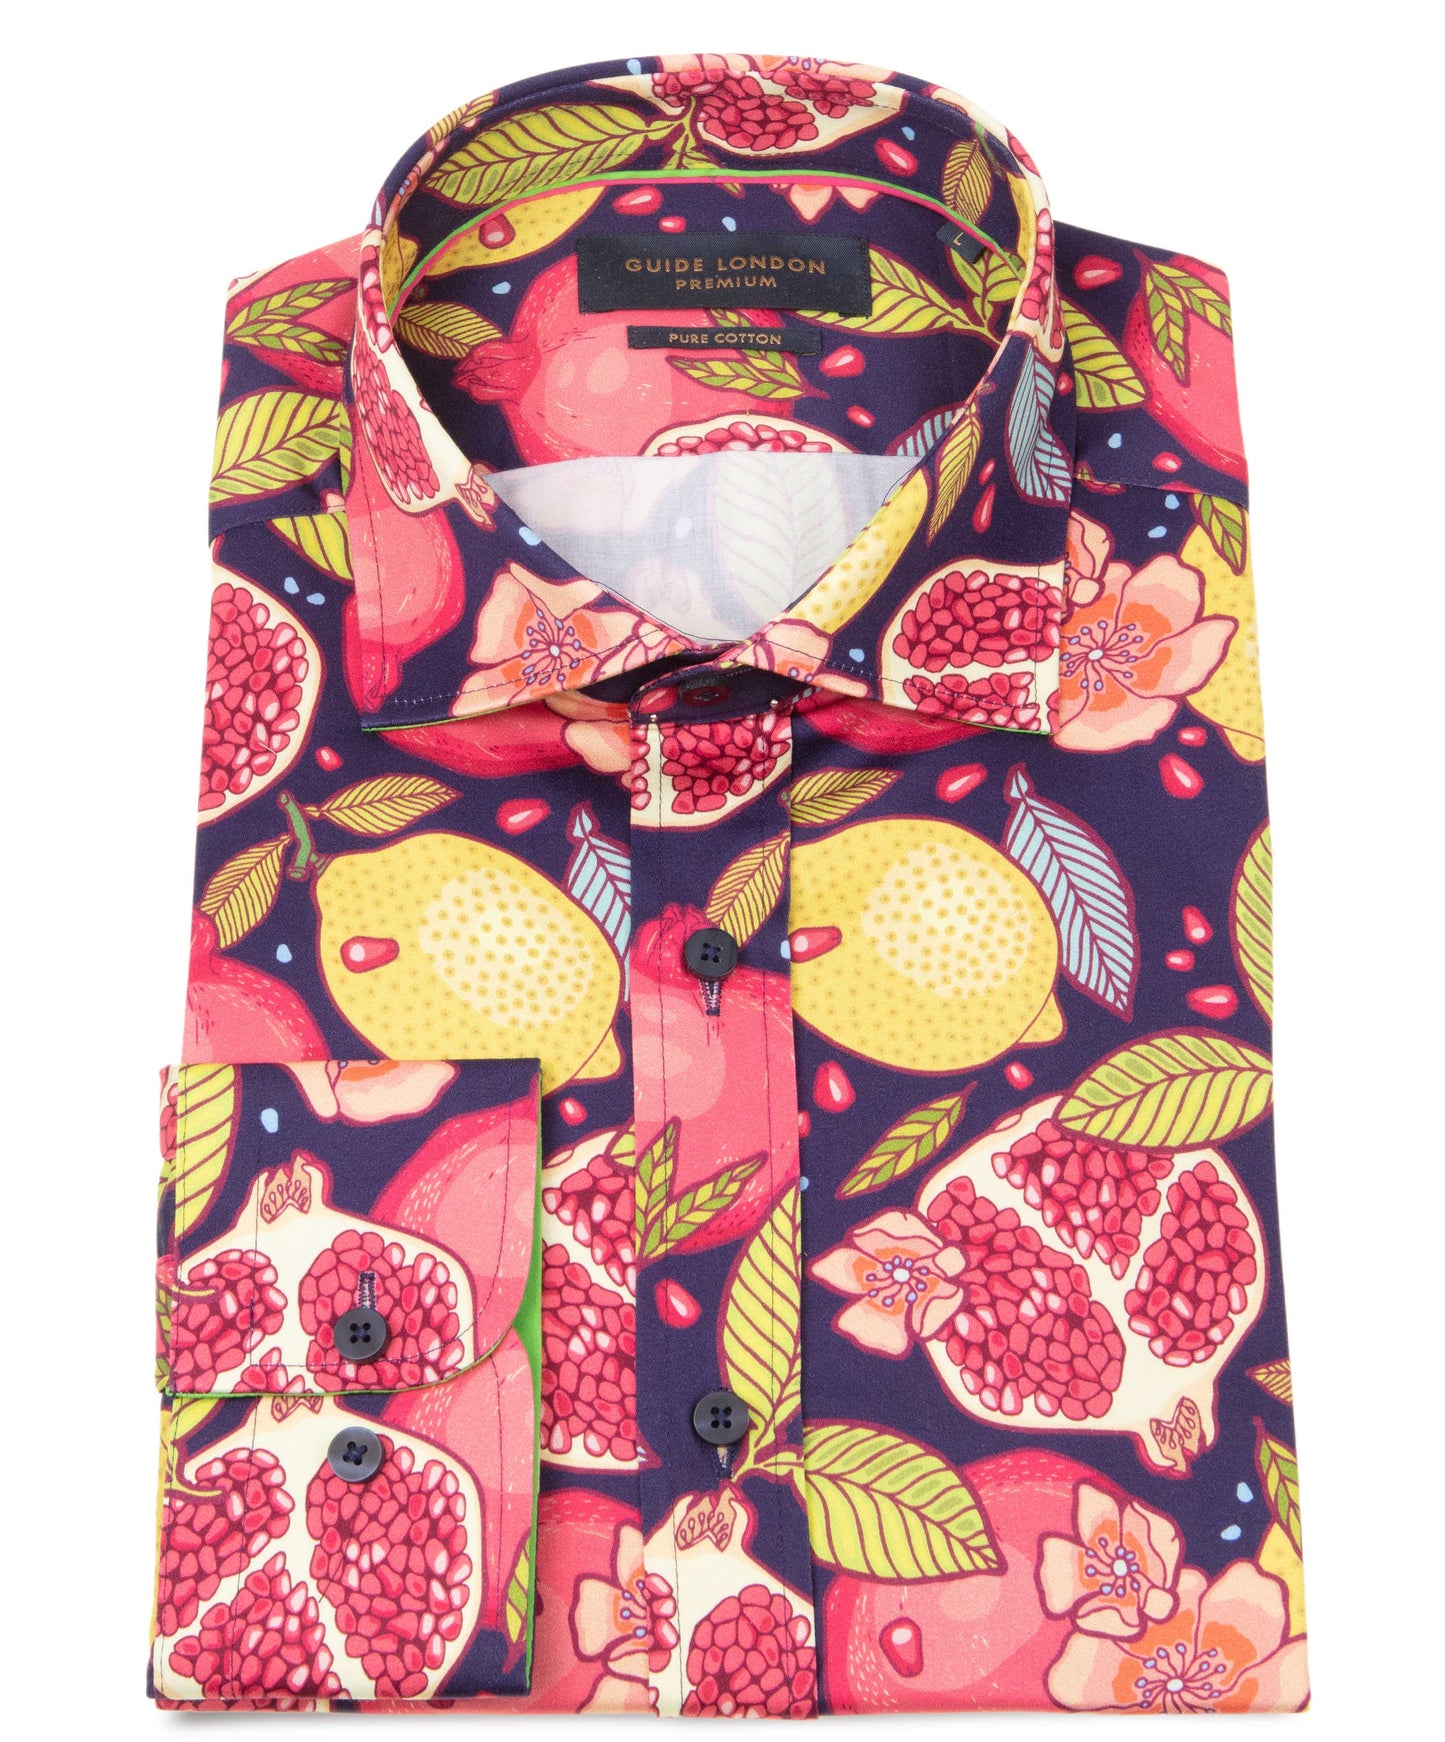 Guide London - Cotton Sateen Shirt - Multi/Fruits